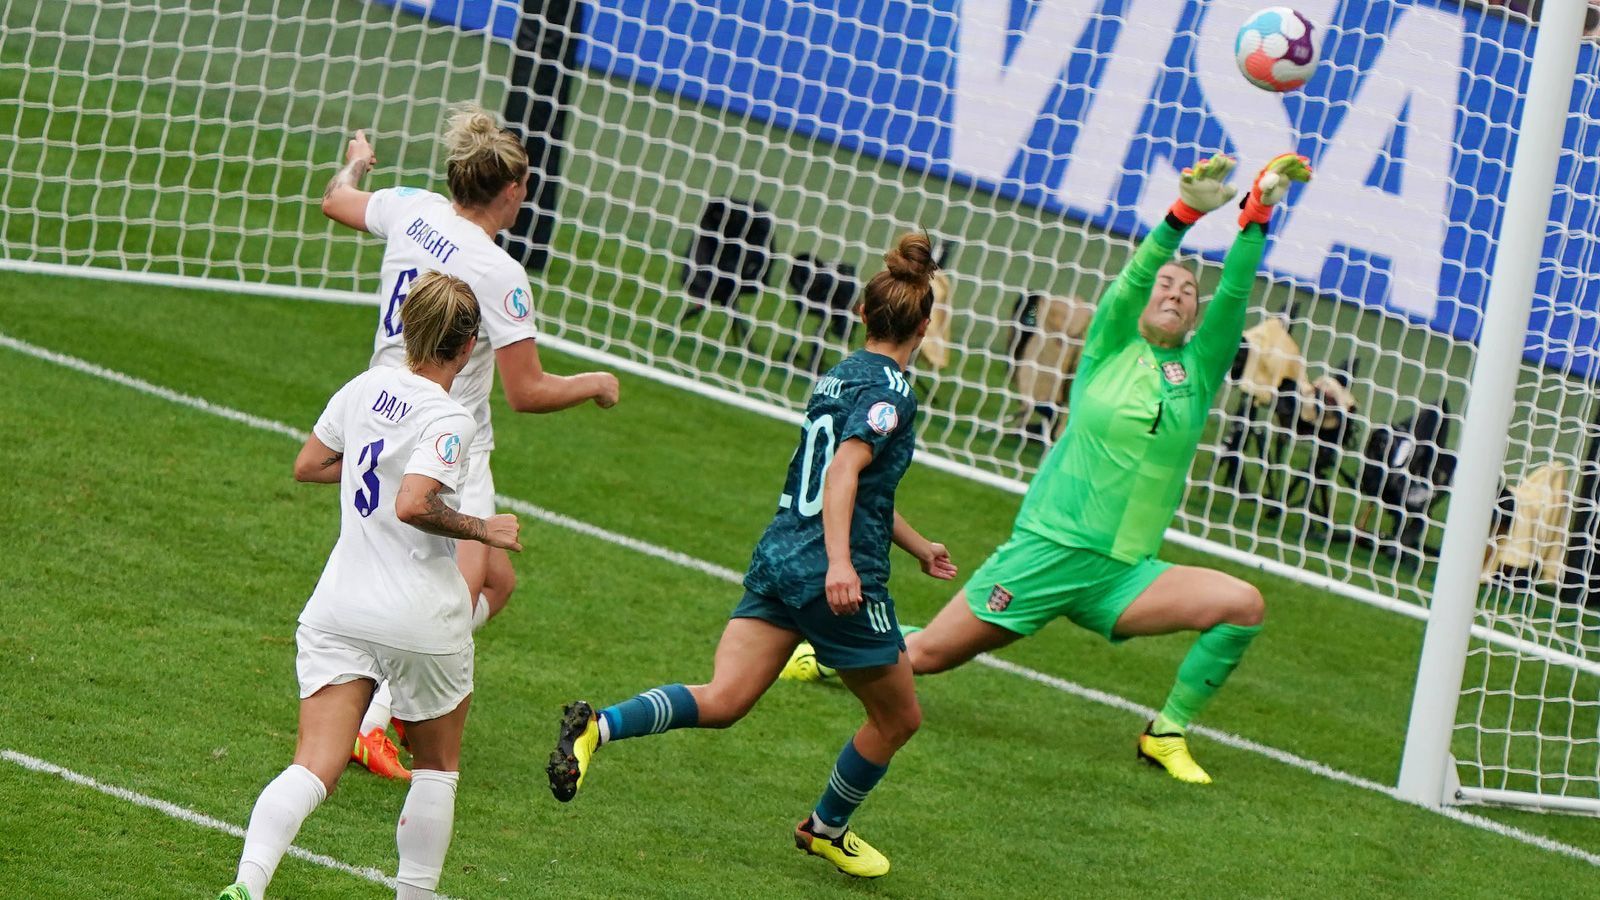 
                <strong>Die Einzelkritik der DFB-Frauen im Finale gegen England</strong><br>
                In einem denkwürdigen Finale vor über 80.000 Zuschauern im Wembleystadion verlieren die deutschen Frauen gegen England mit 1:2 nach Verlängerung. Wir haben die Spielerinnen des DFB-Teams benotet.
              